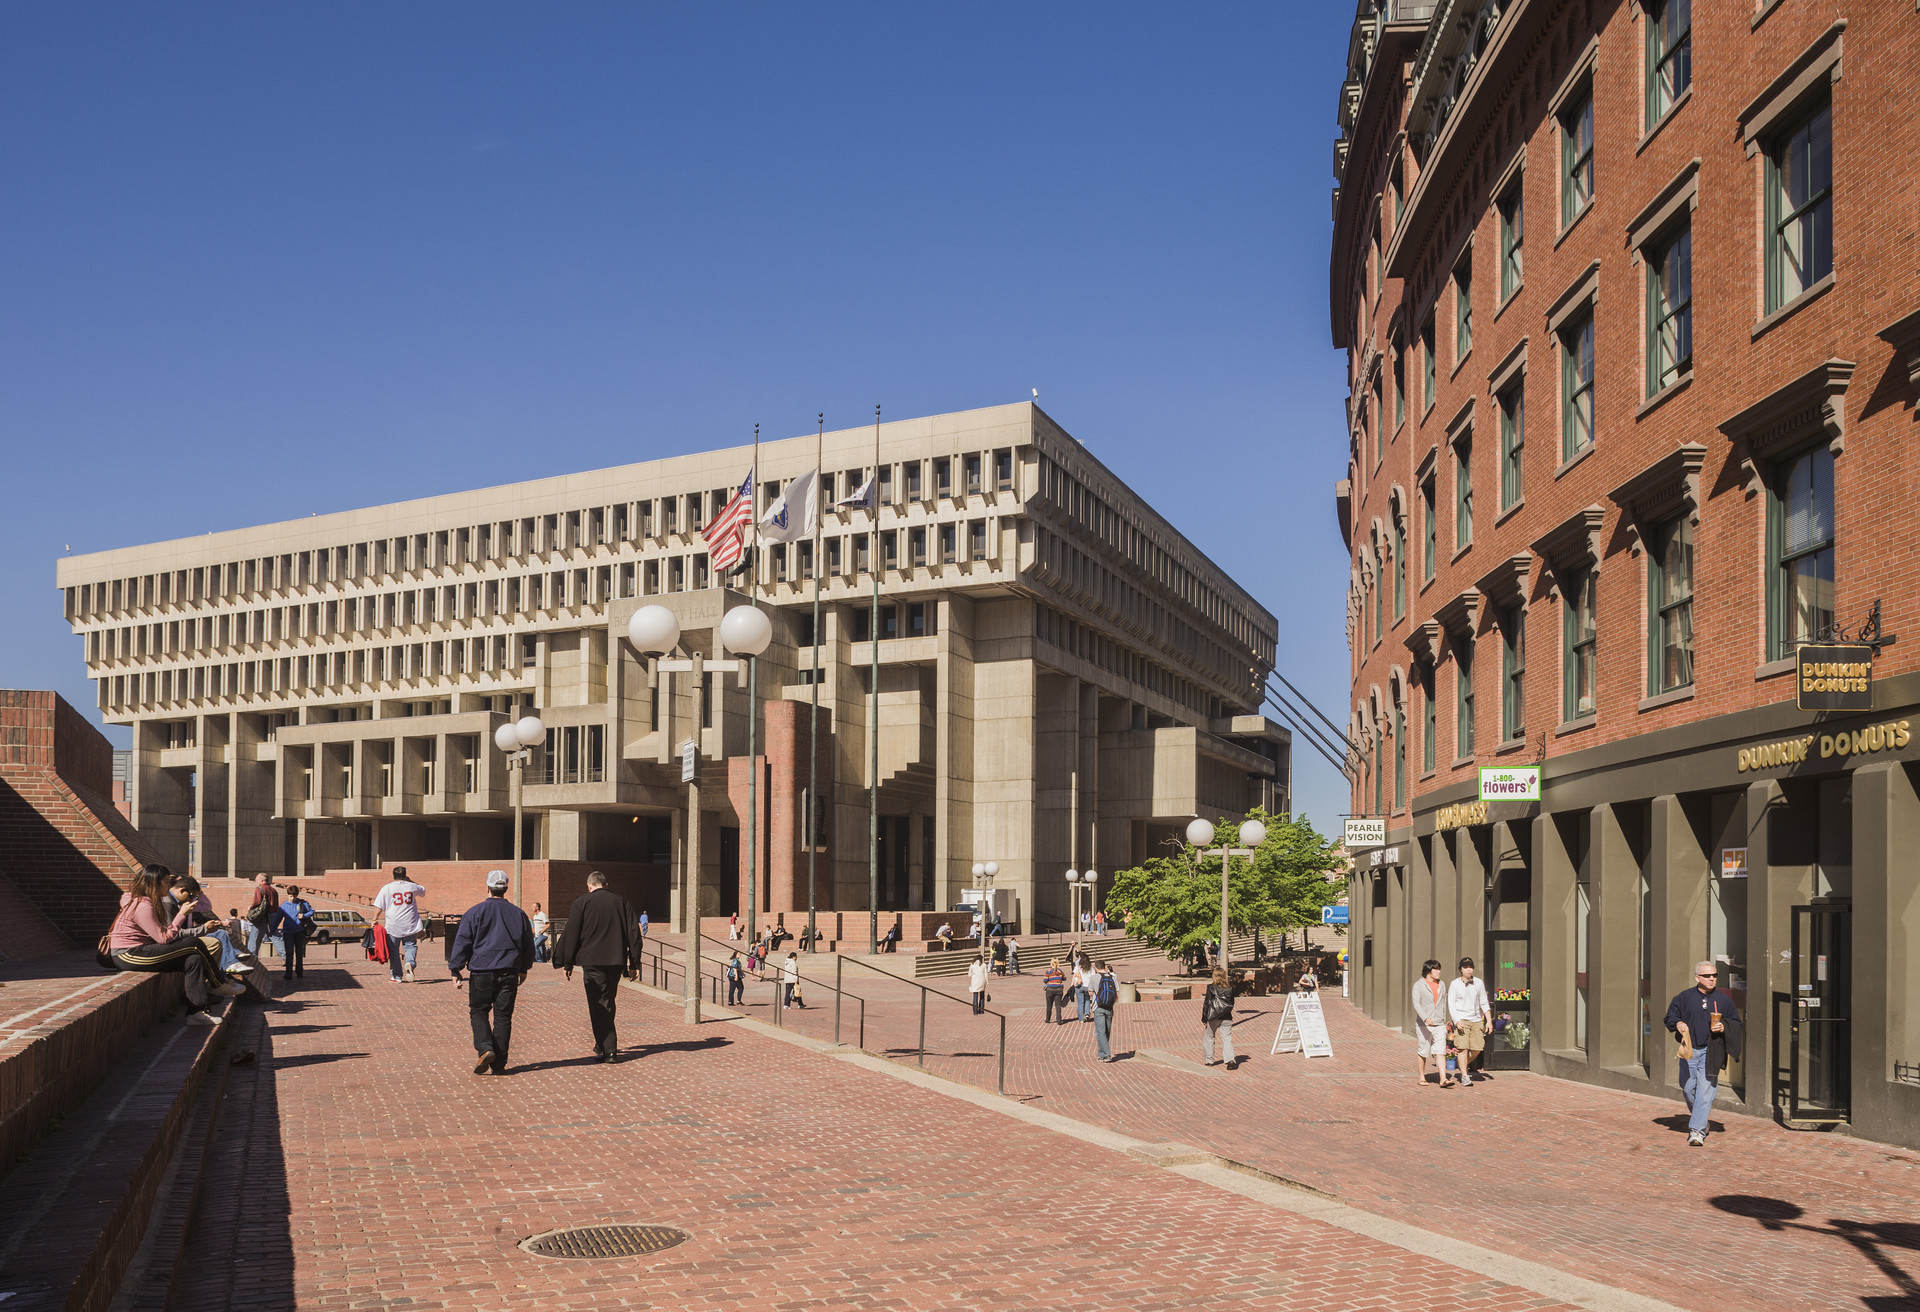 El Ayuntamiento de Boston es uno de los muchos edificios gubernamentales que se construyeron durante el apogeo del brutalismo